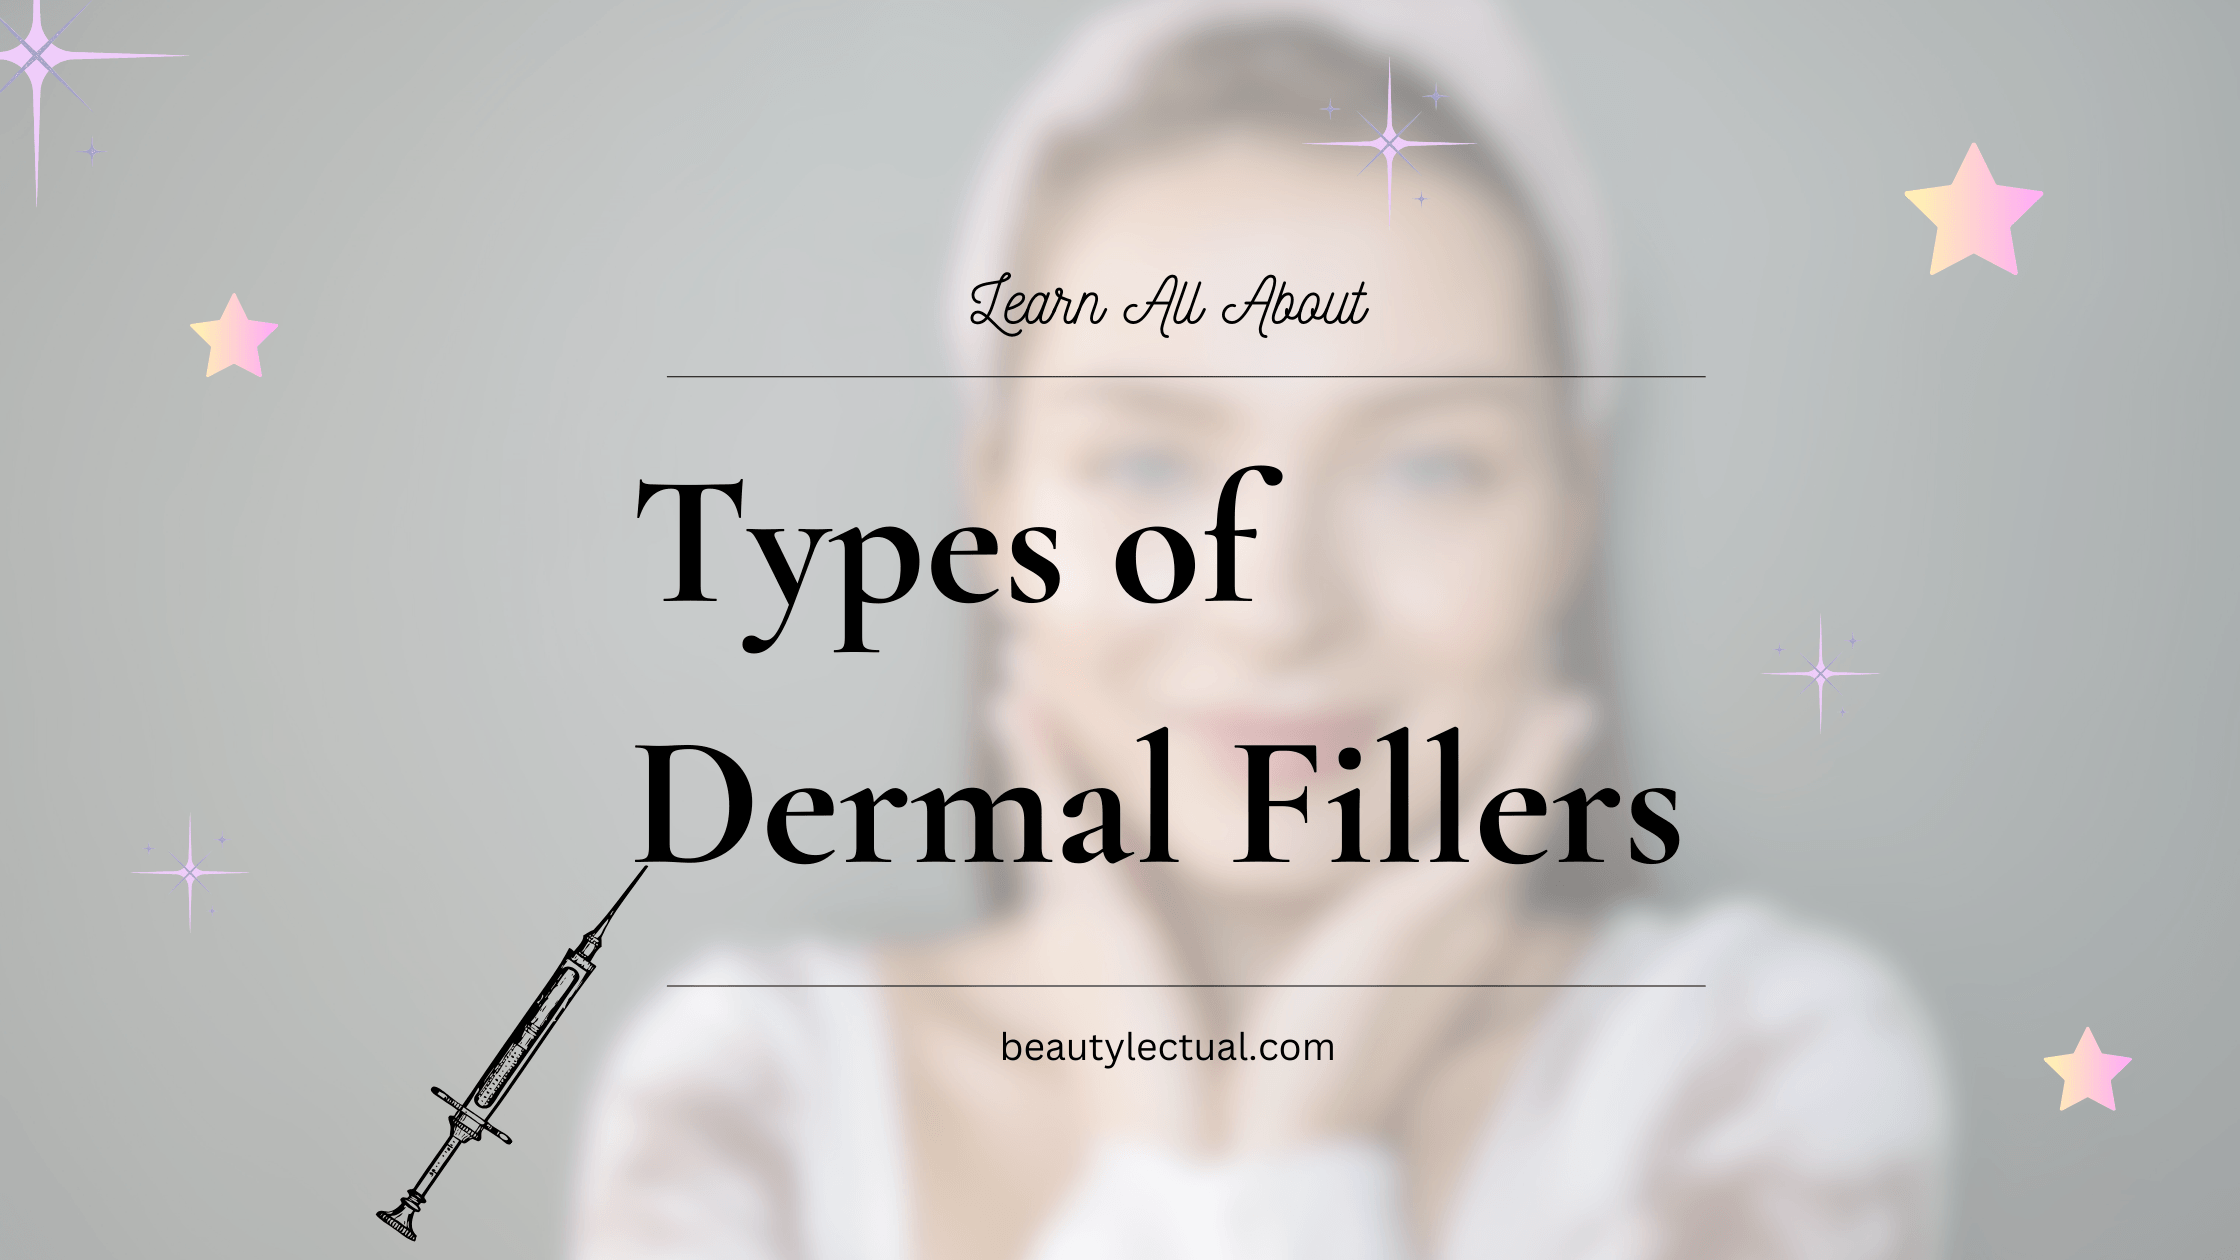 Types of Dermal Fillers